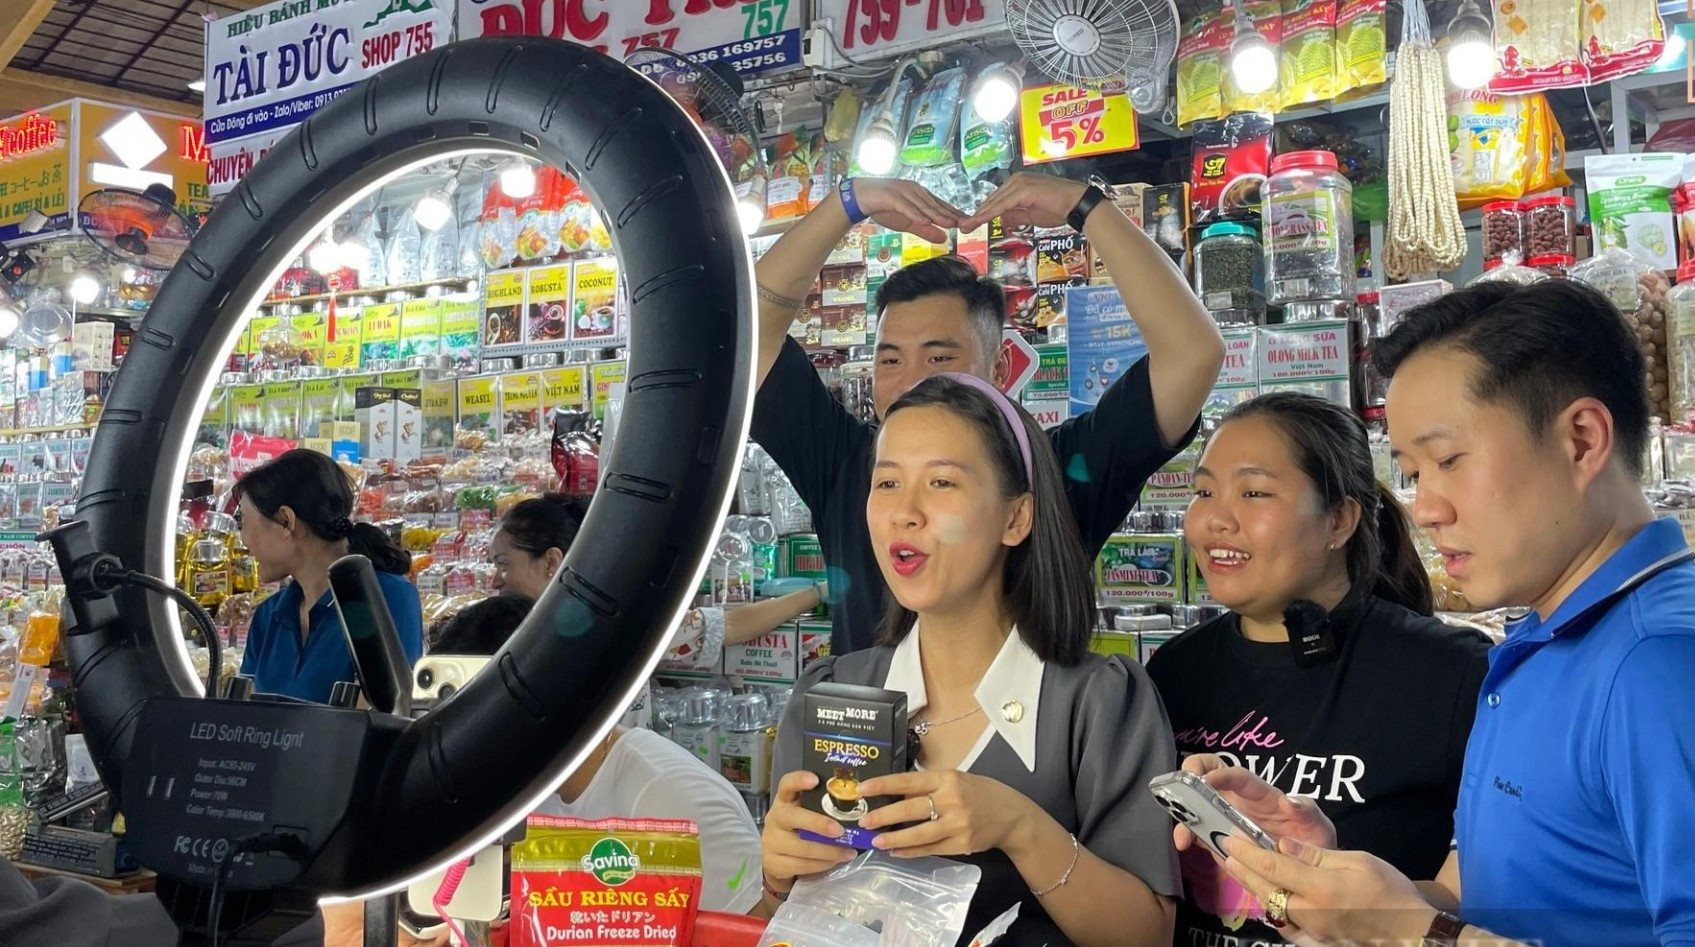 Tiểu thương chợ Bến Thành sôi nỏi tham gia bán hàng trực tuyến bằng hình thức livetream